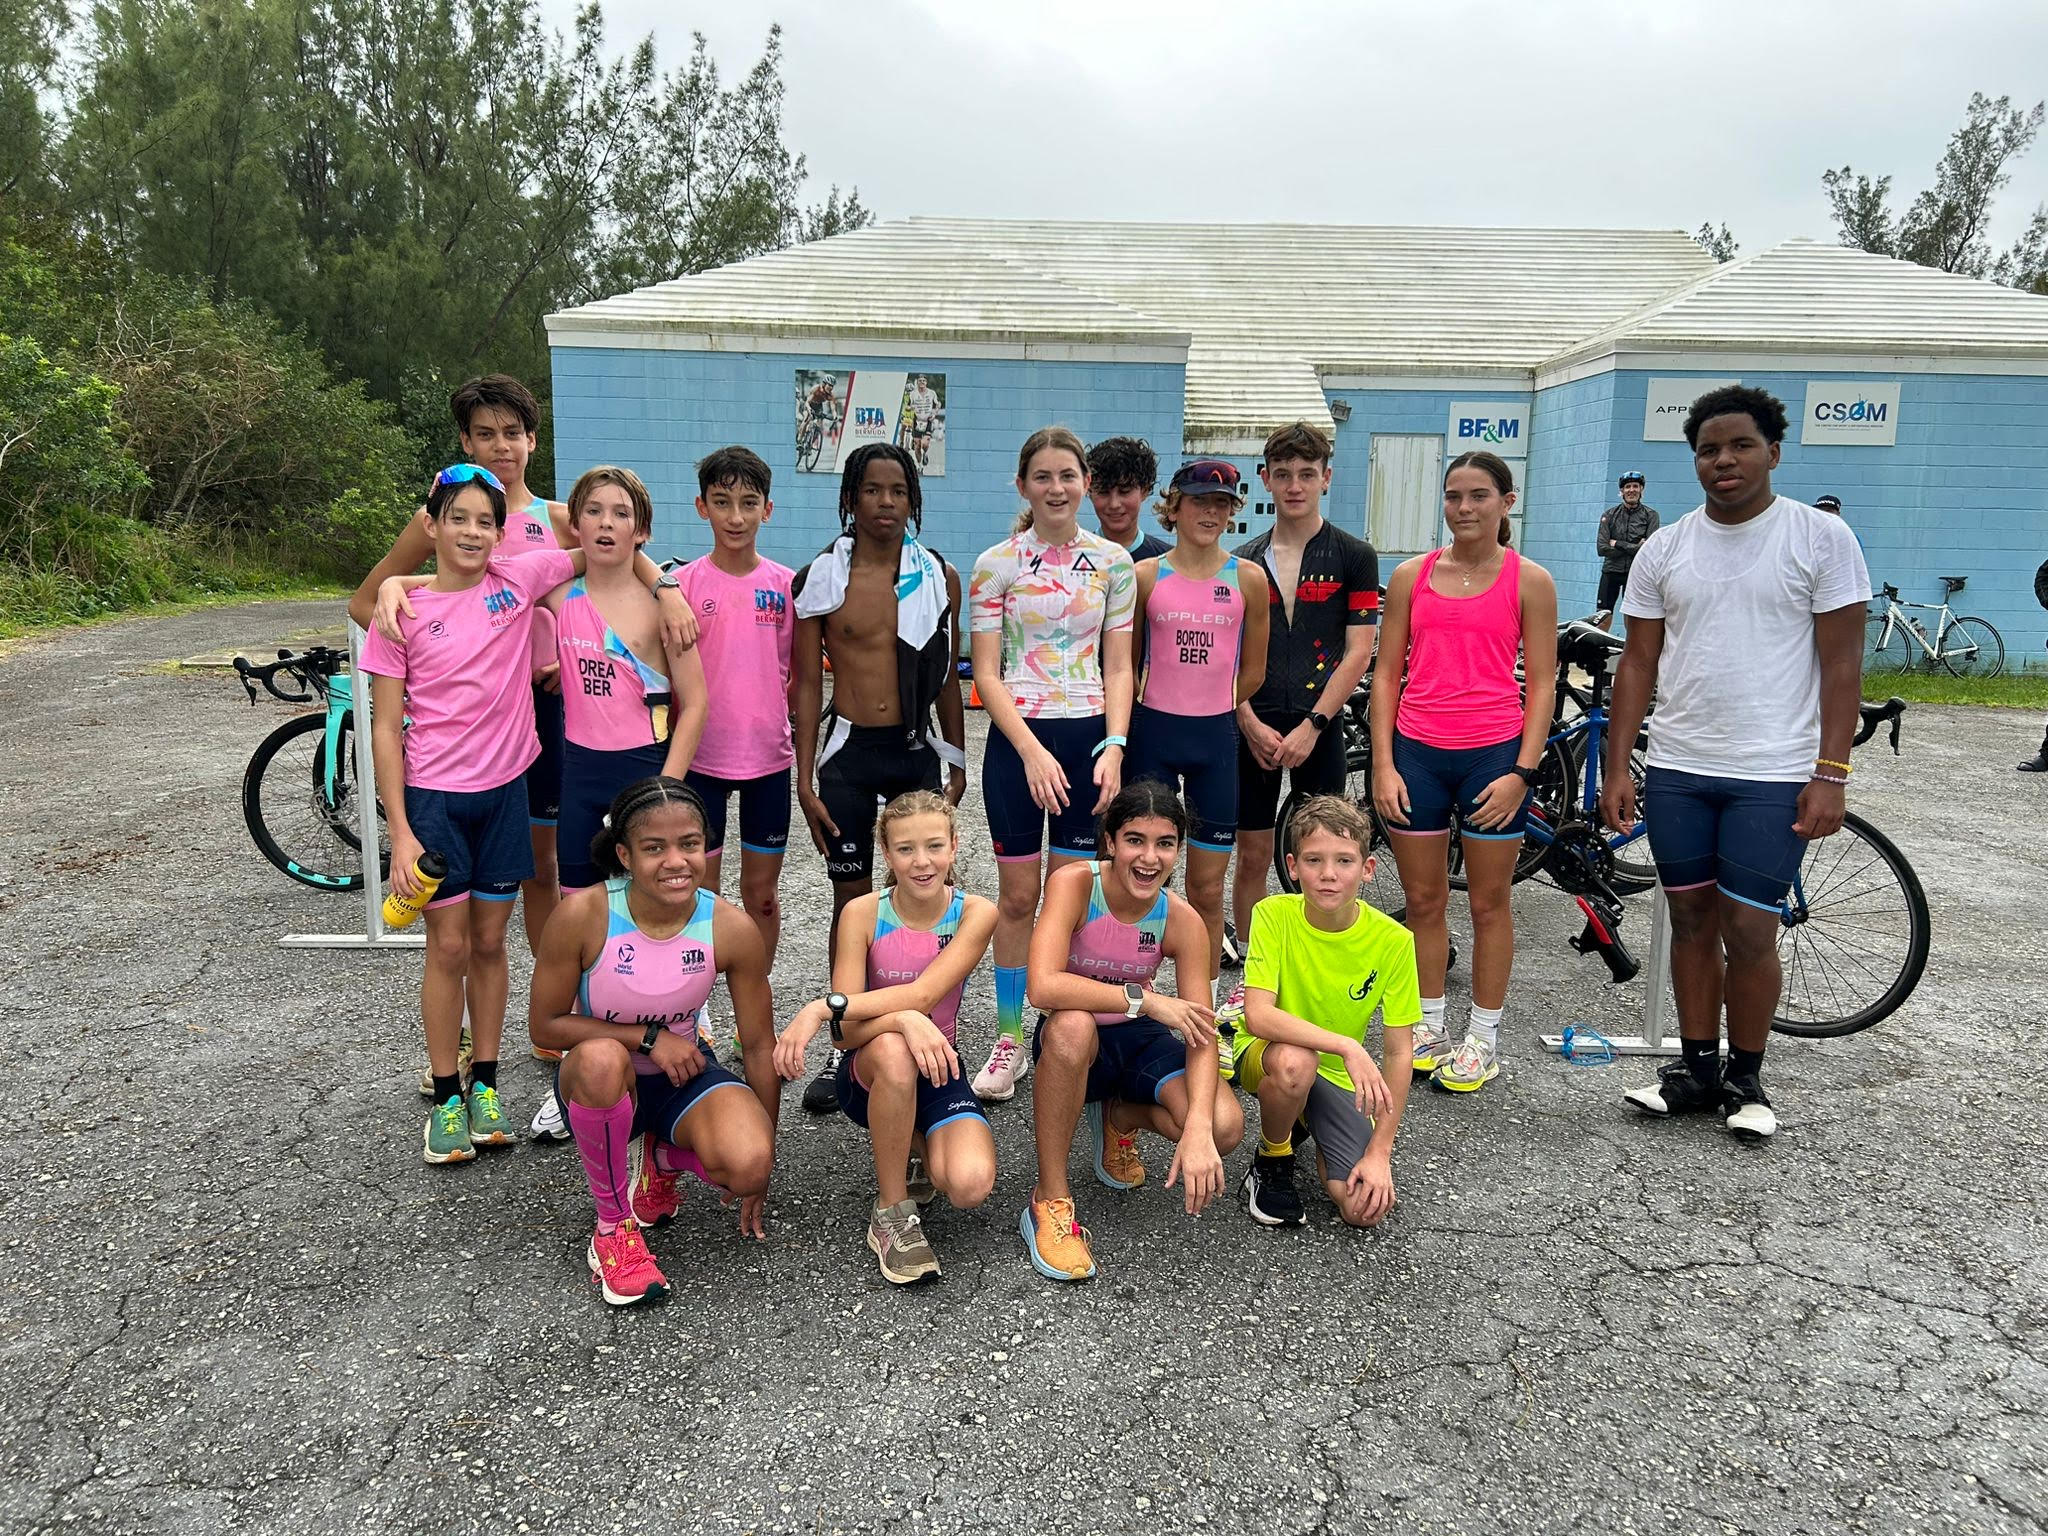 Bermuda Junior Triathltes Compete in Florida (Triathlons)